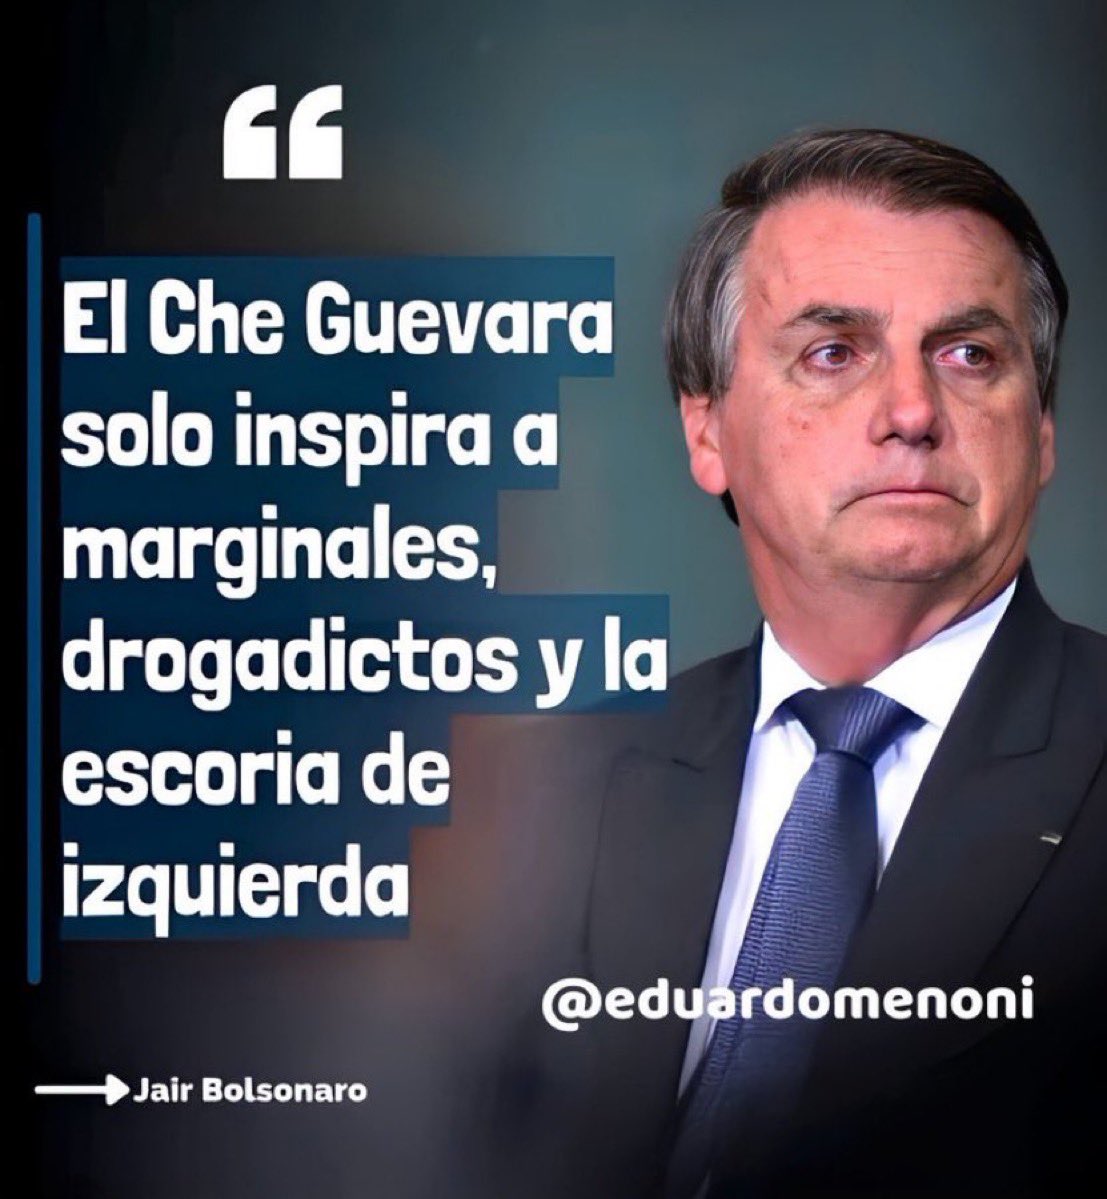 ¿Estás de acuerdo con esta afirmación de Jair Bolsonaro?